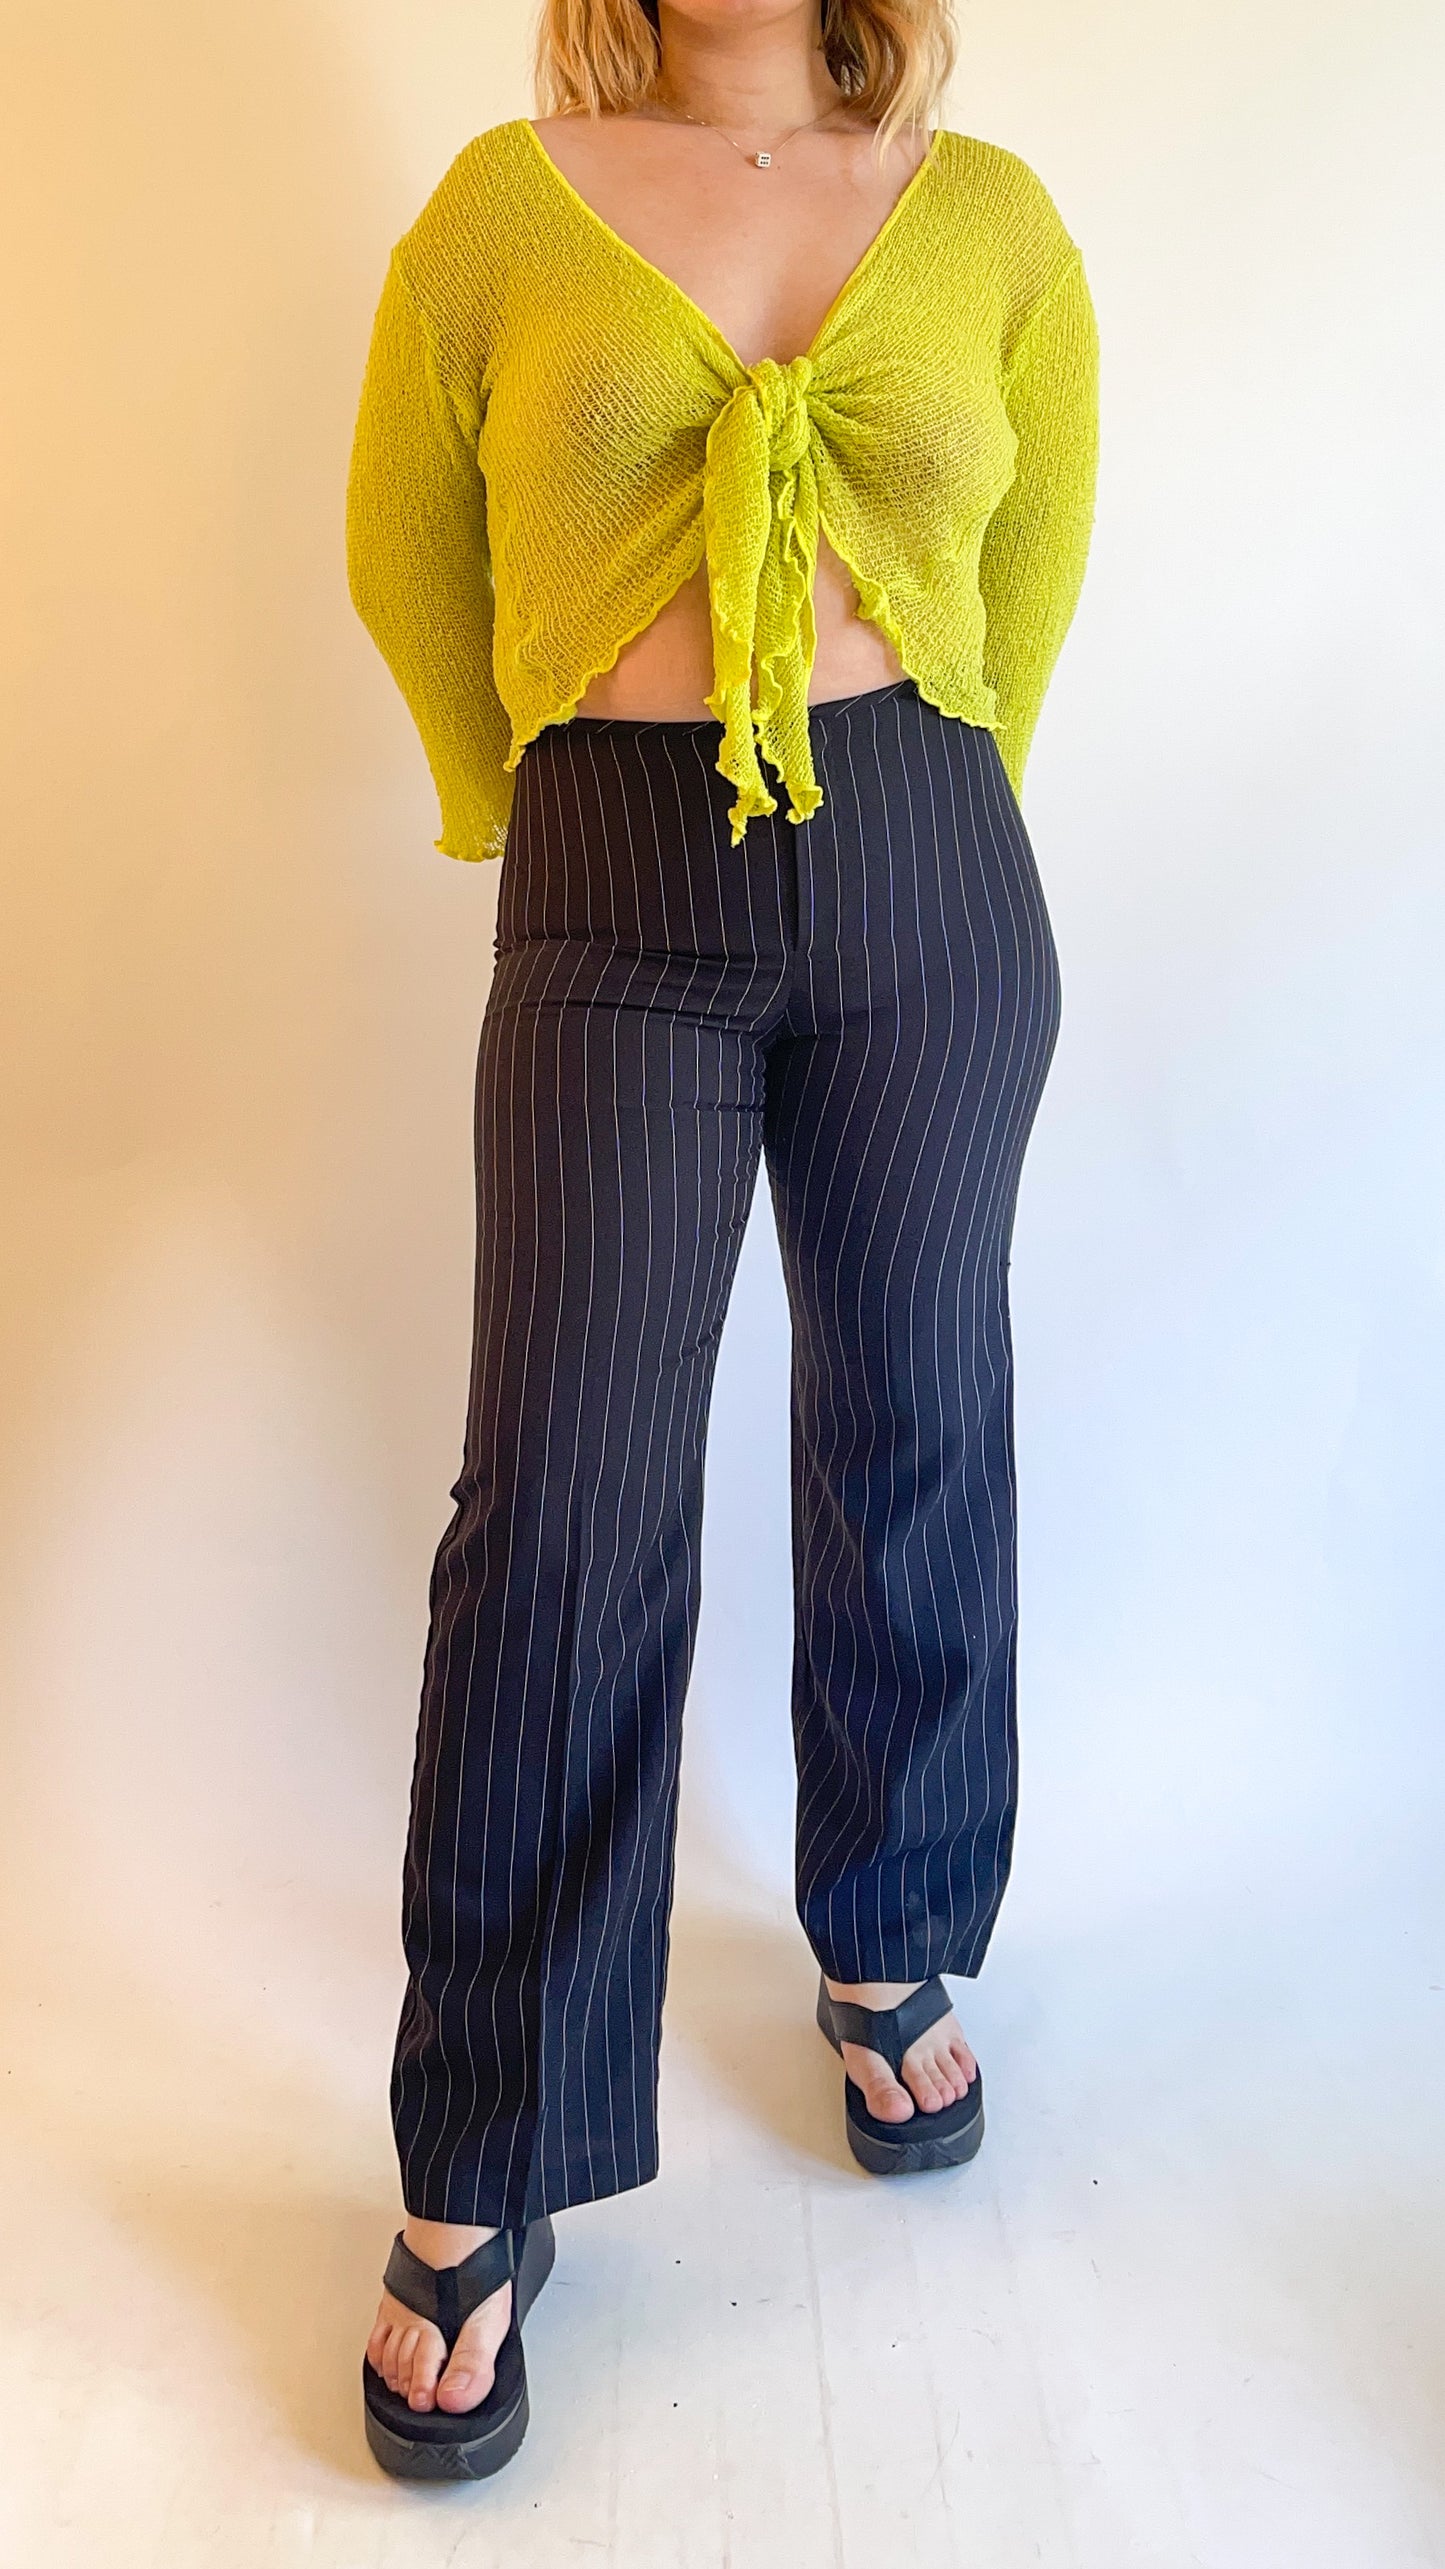 90s Black & White Pin Stripe Pants (W28"-29")